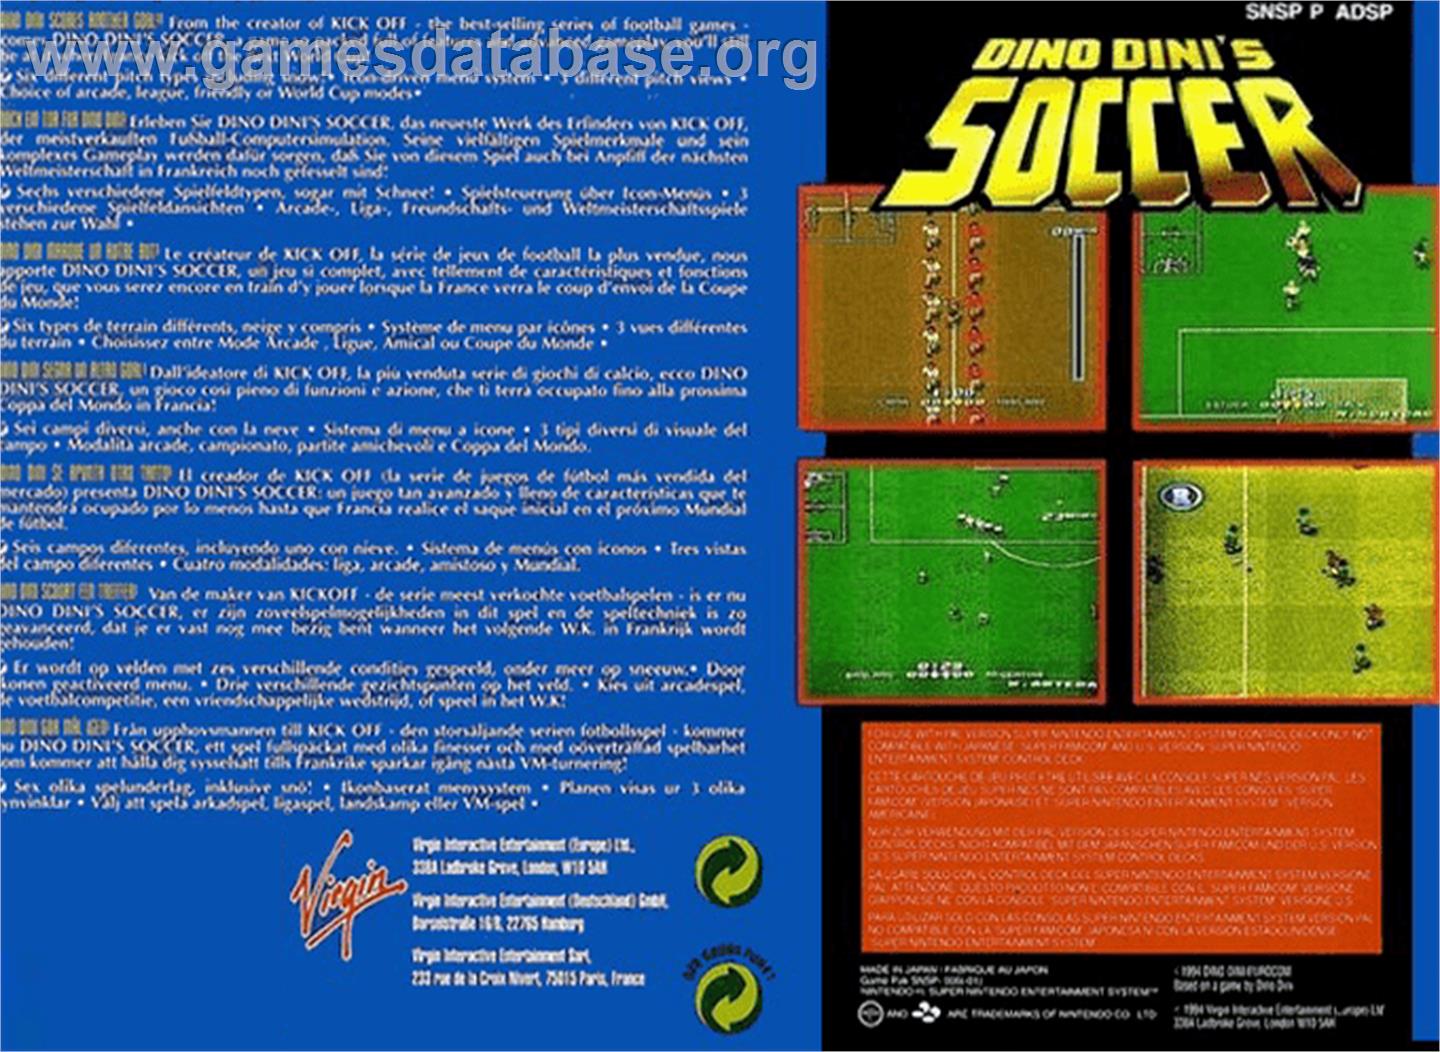 Dino Dini's Soccer - Nintendo SNES - Artwork - Box Back